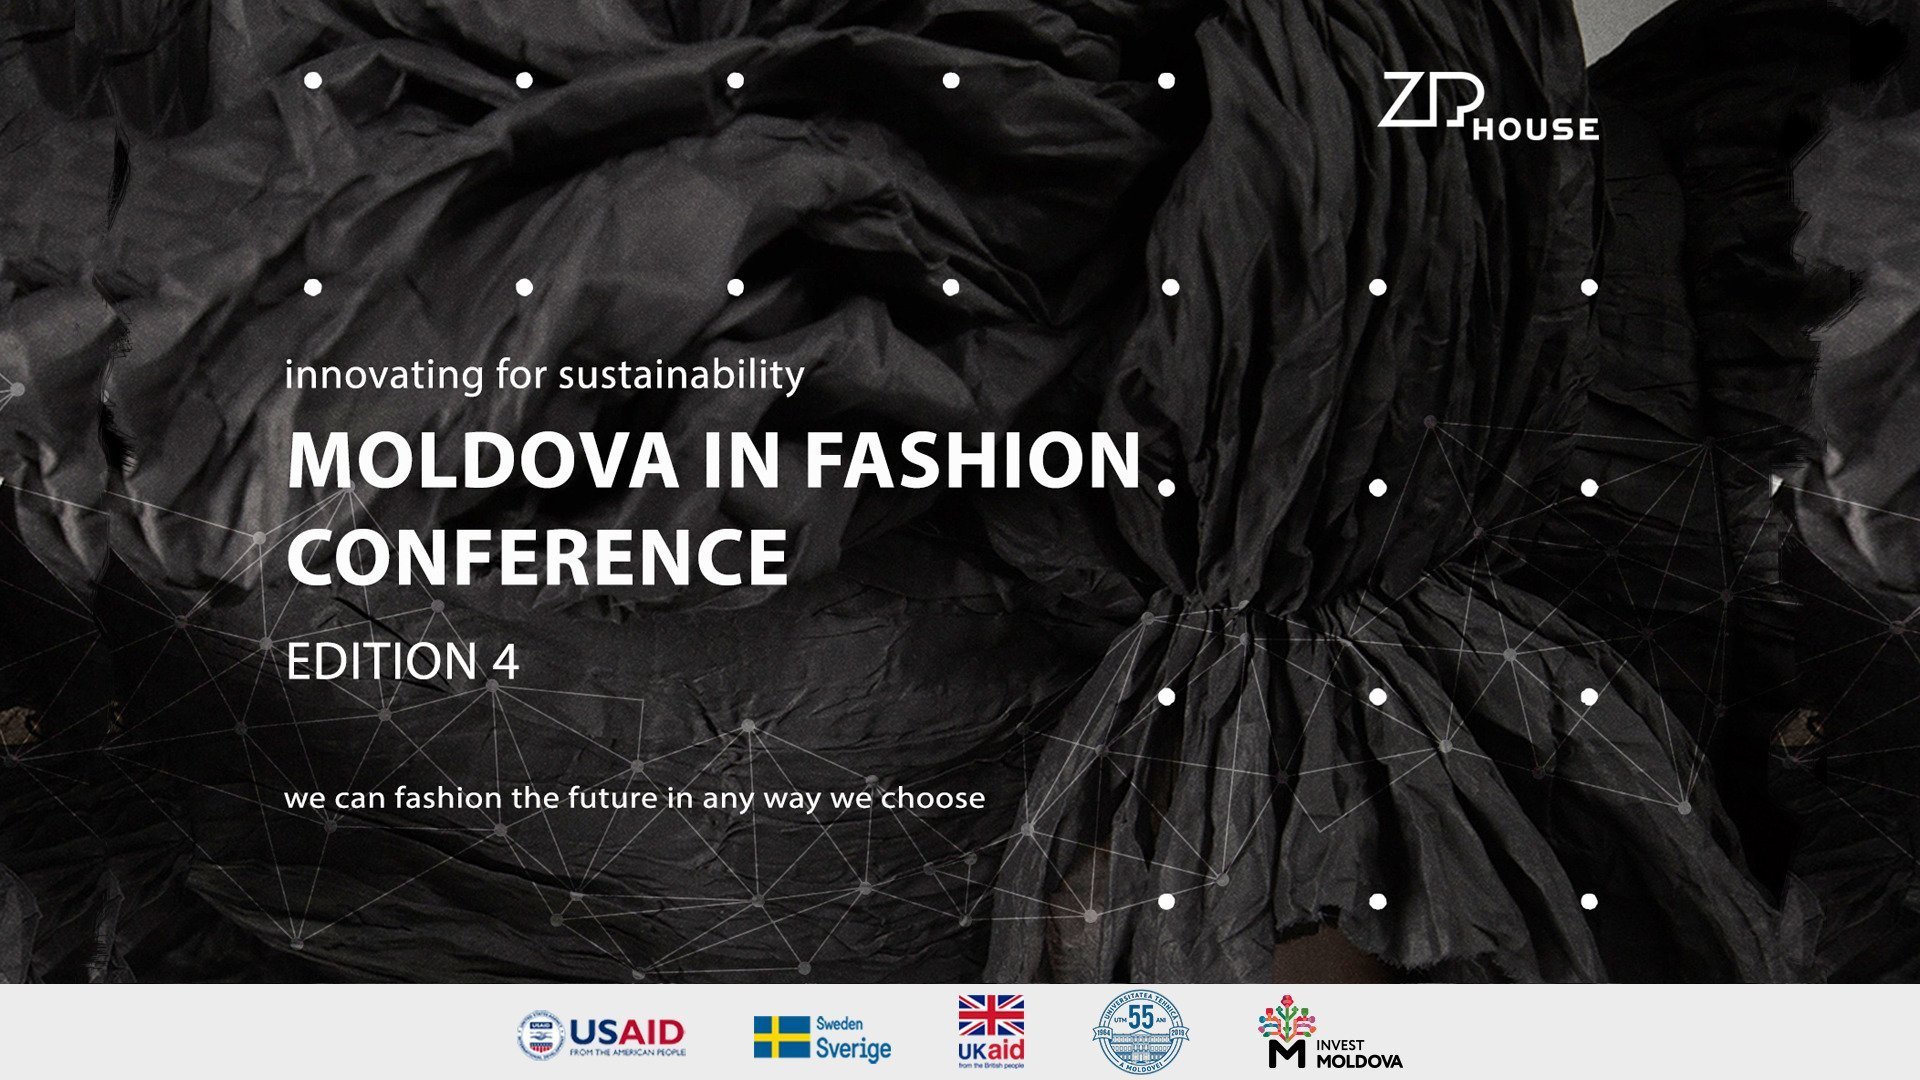 Moldova in fashion conference - edition 4